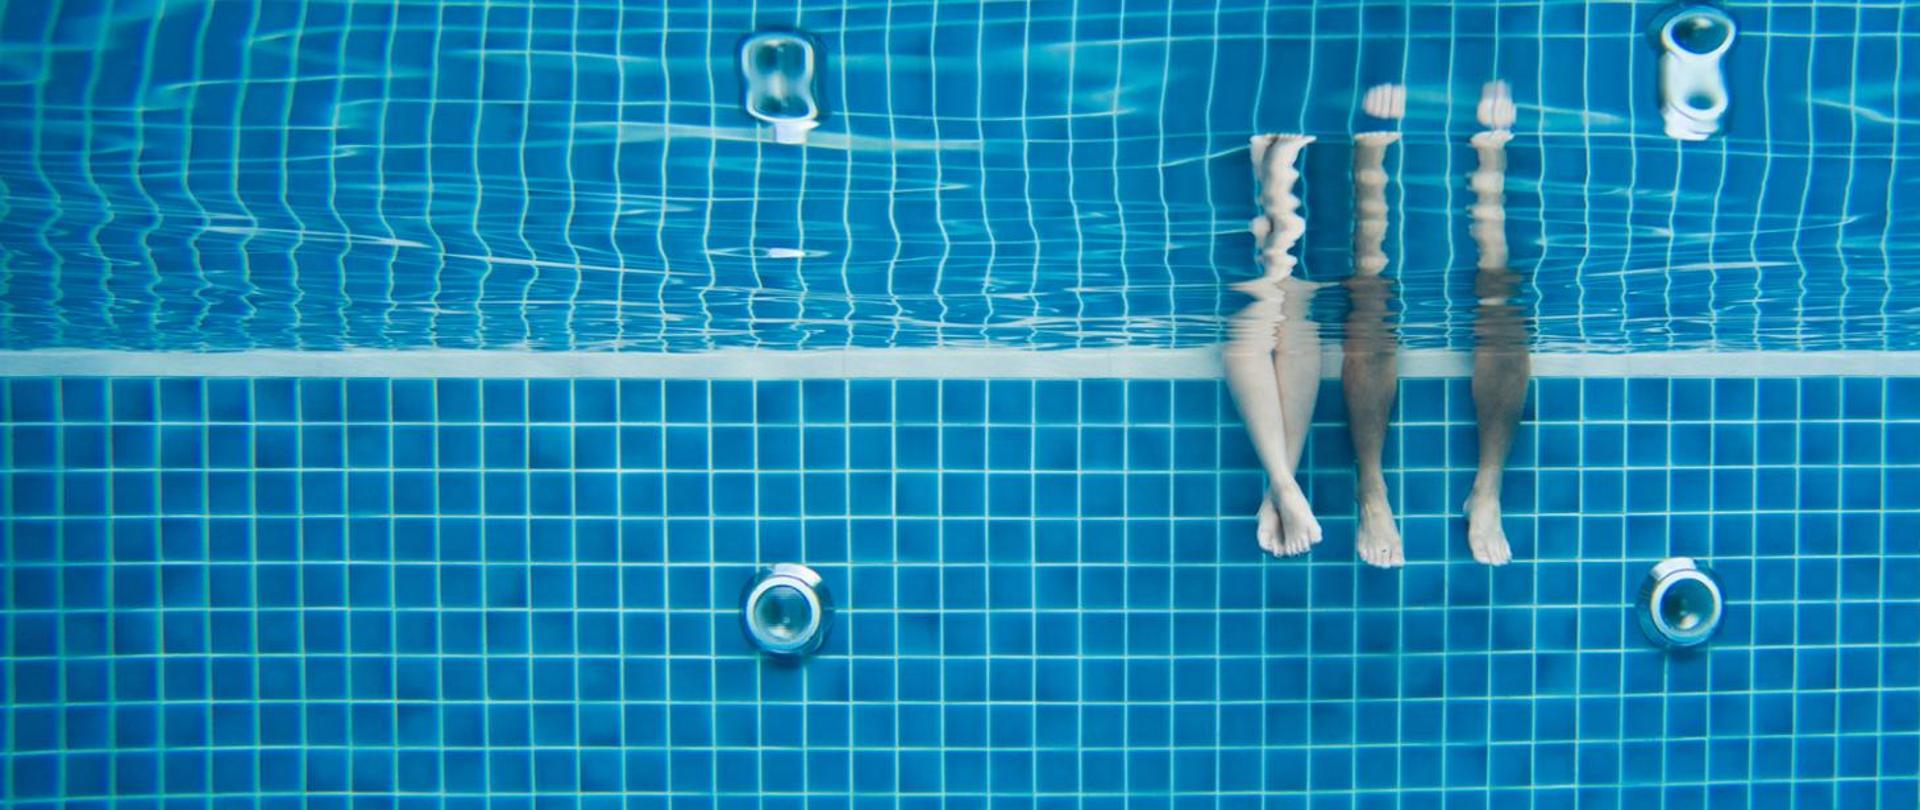 Zdjęcie przedstawia parę siedzącą nad basenem, która moczy nogi w wodzie.